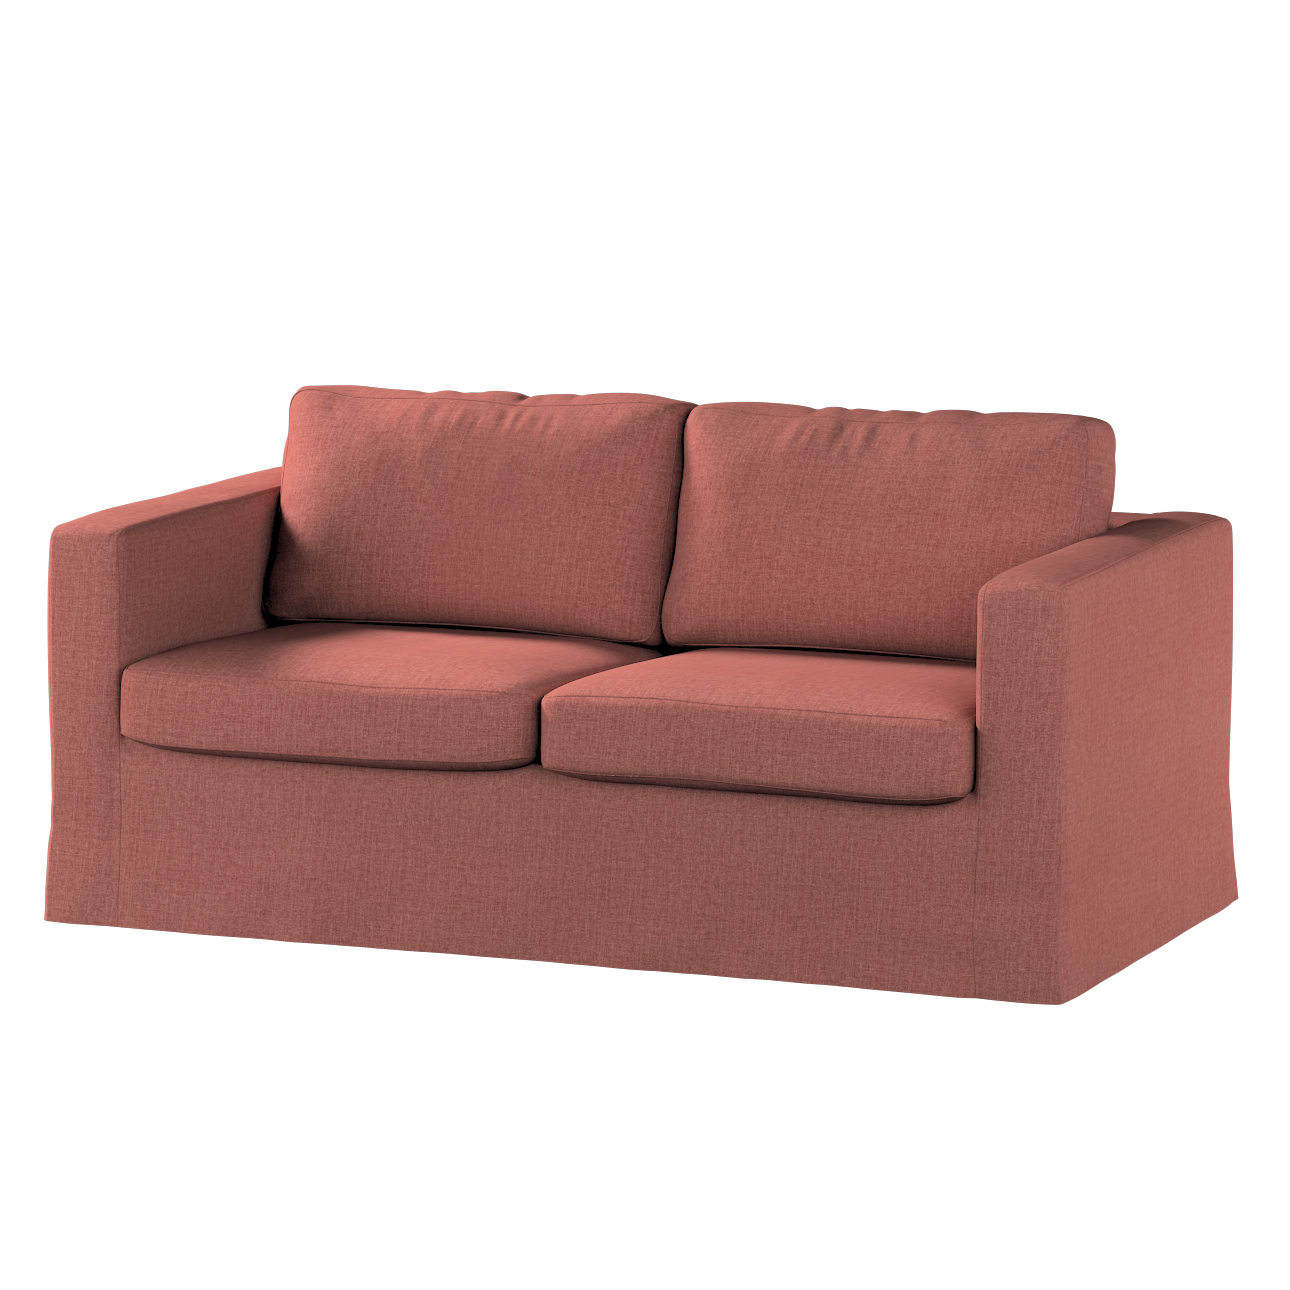 Bezug für Karlstad 2-Sitzer Sofa nicht ausklappbar, lang, cognac braun, Sof günstig online kaufen